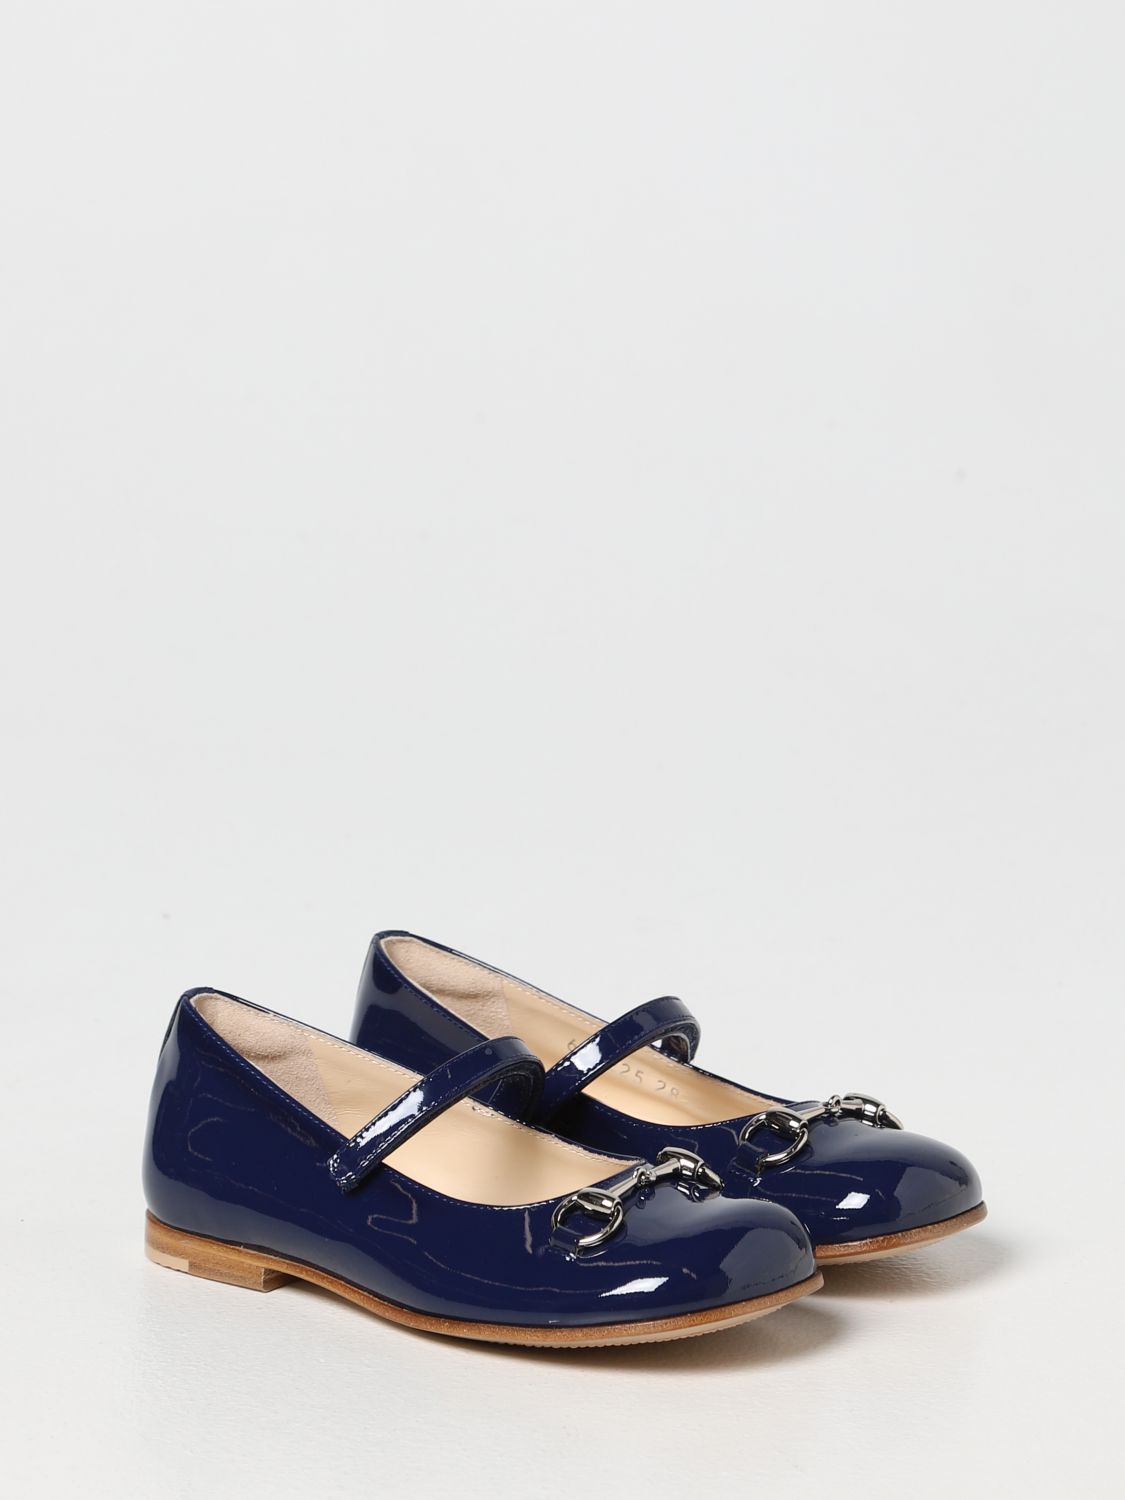 GUCCI: Zapatos niña, Azul Oscuro | Zapatos Gucci 682225ALU00 en línea GIGLIO.COM